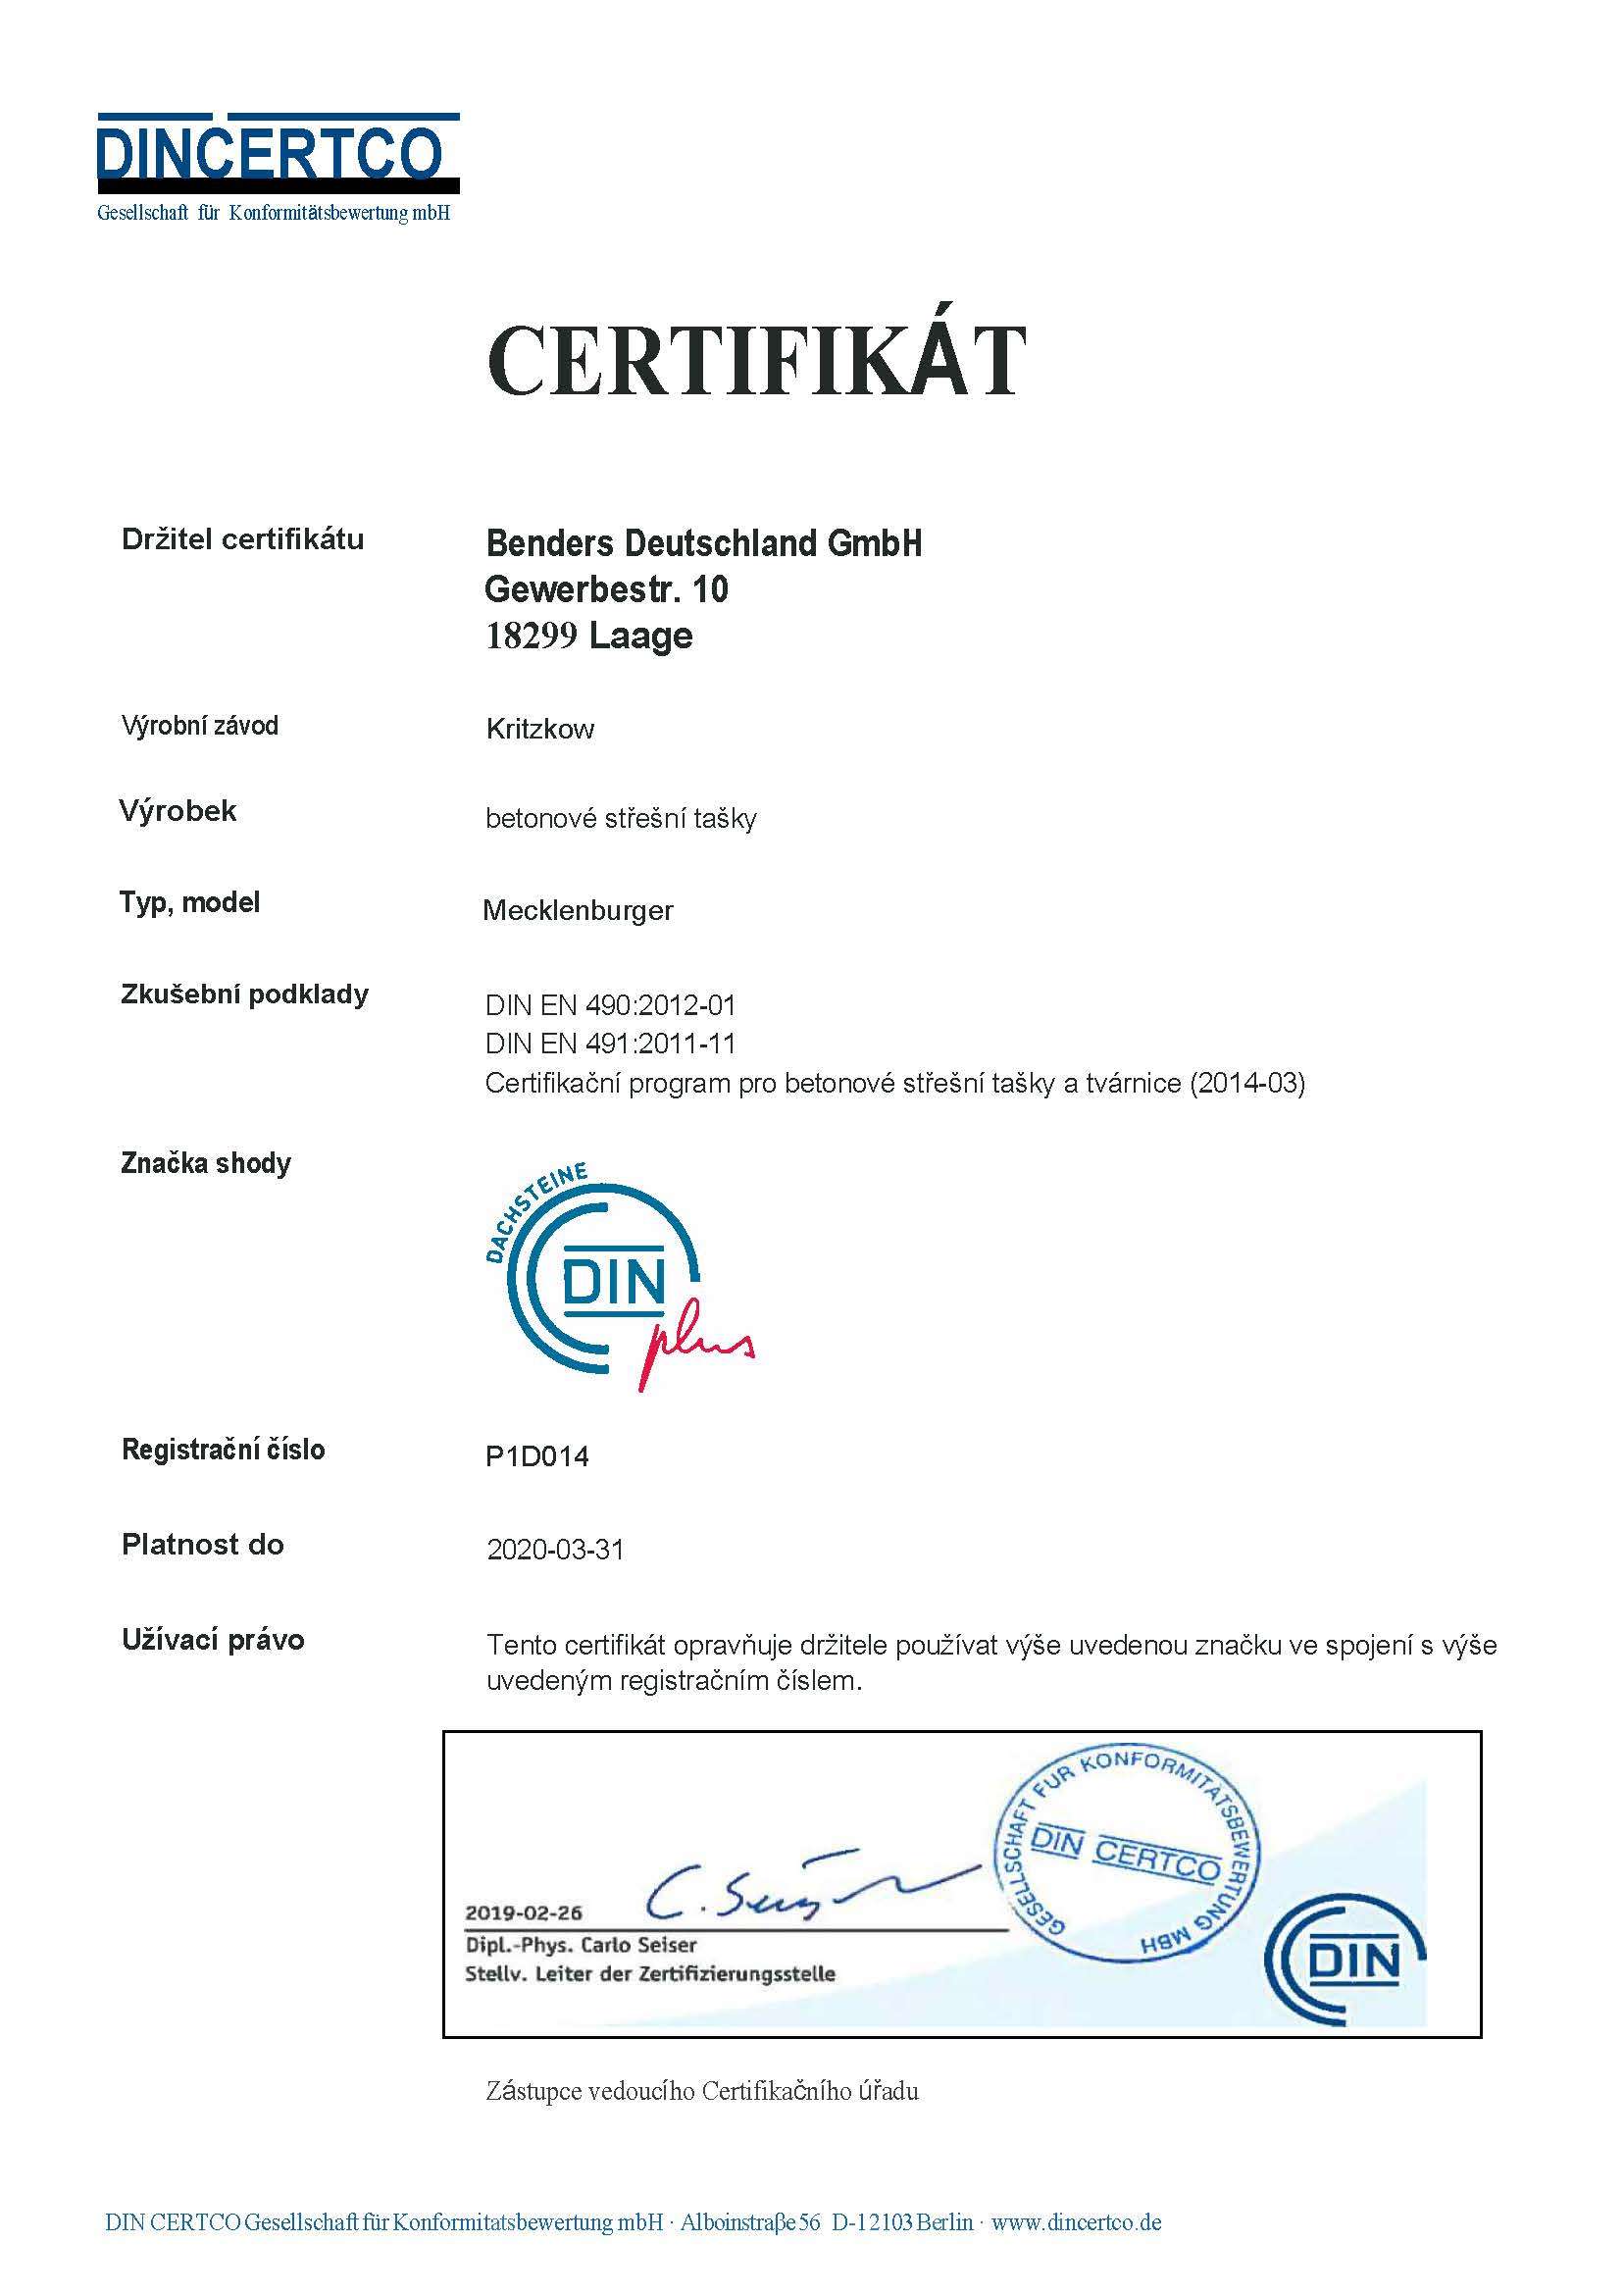 Din Certifikát - DIN -EN 4902012-01 -DIN EN 4912011-11- Mecklenburger -překlad